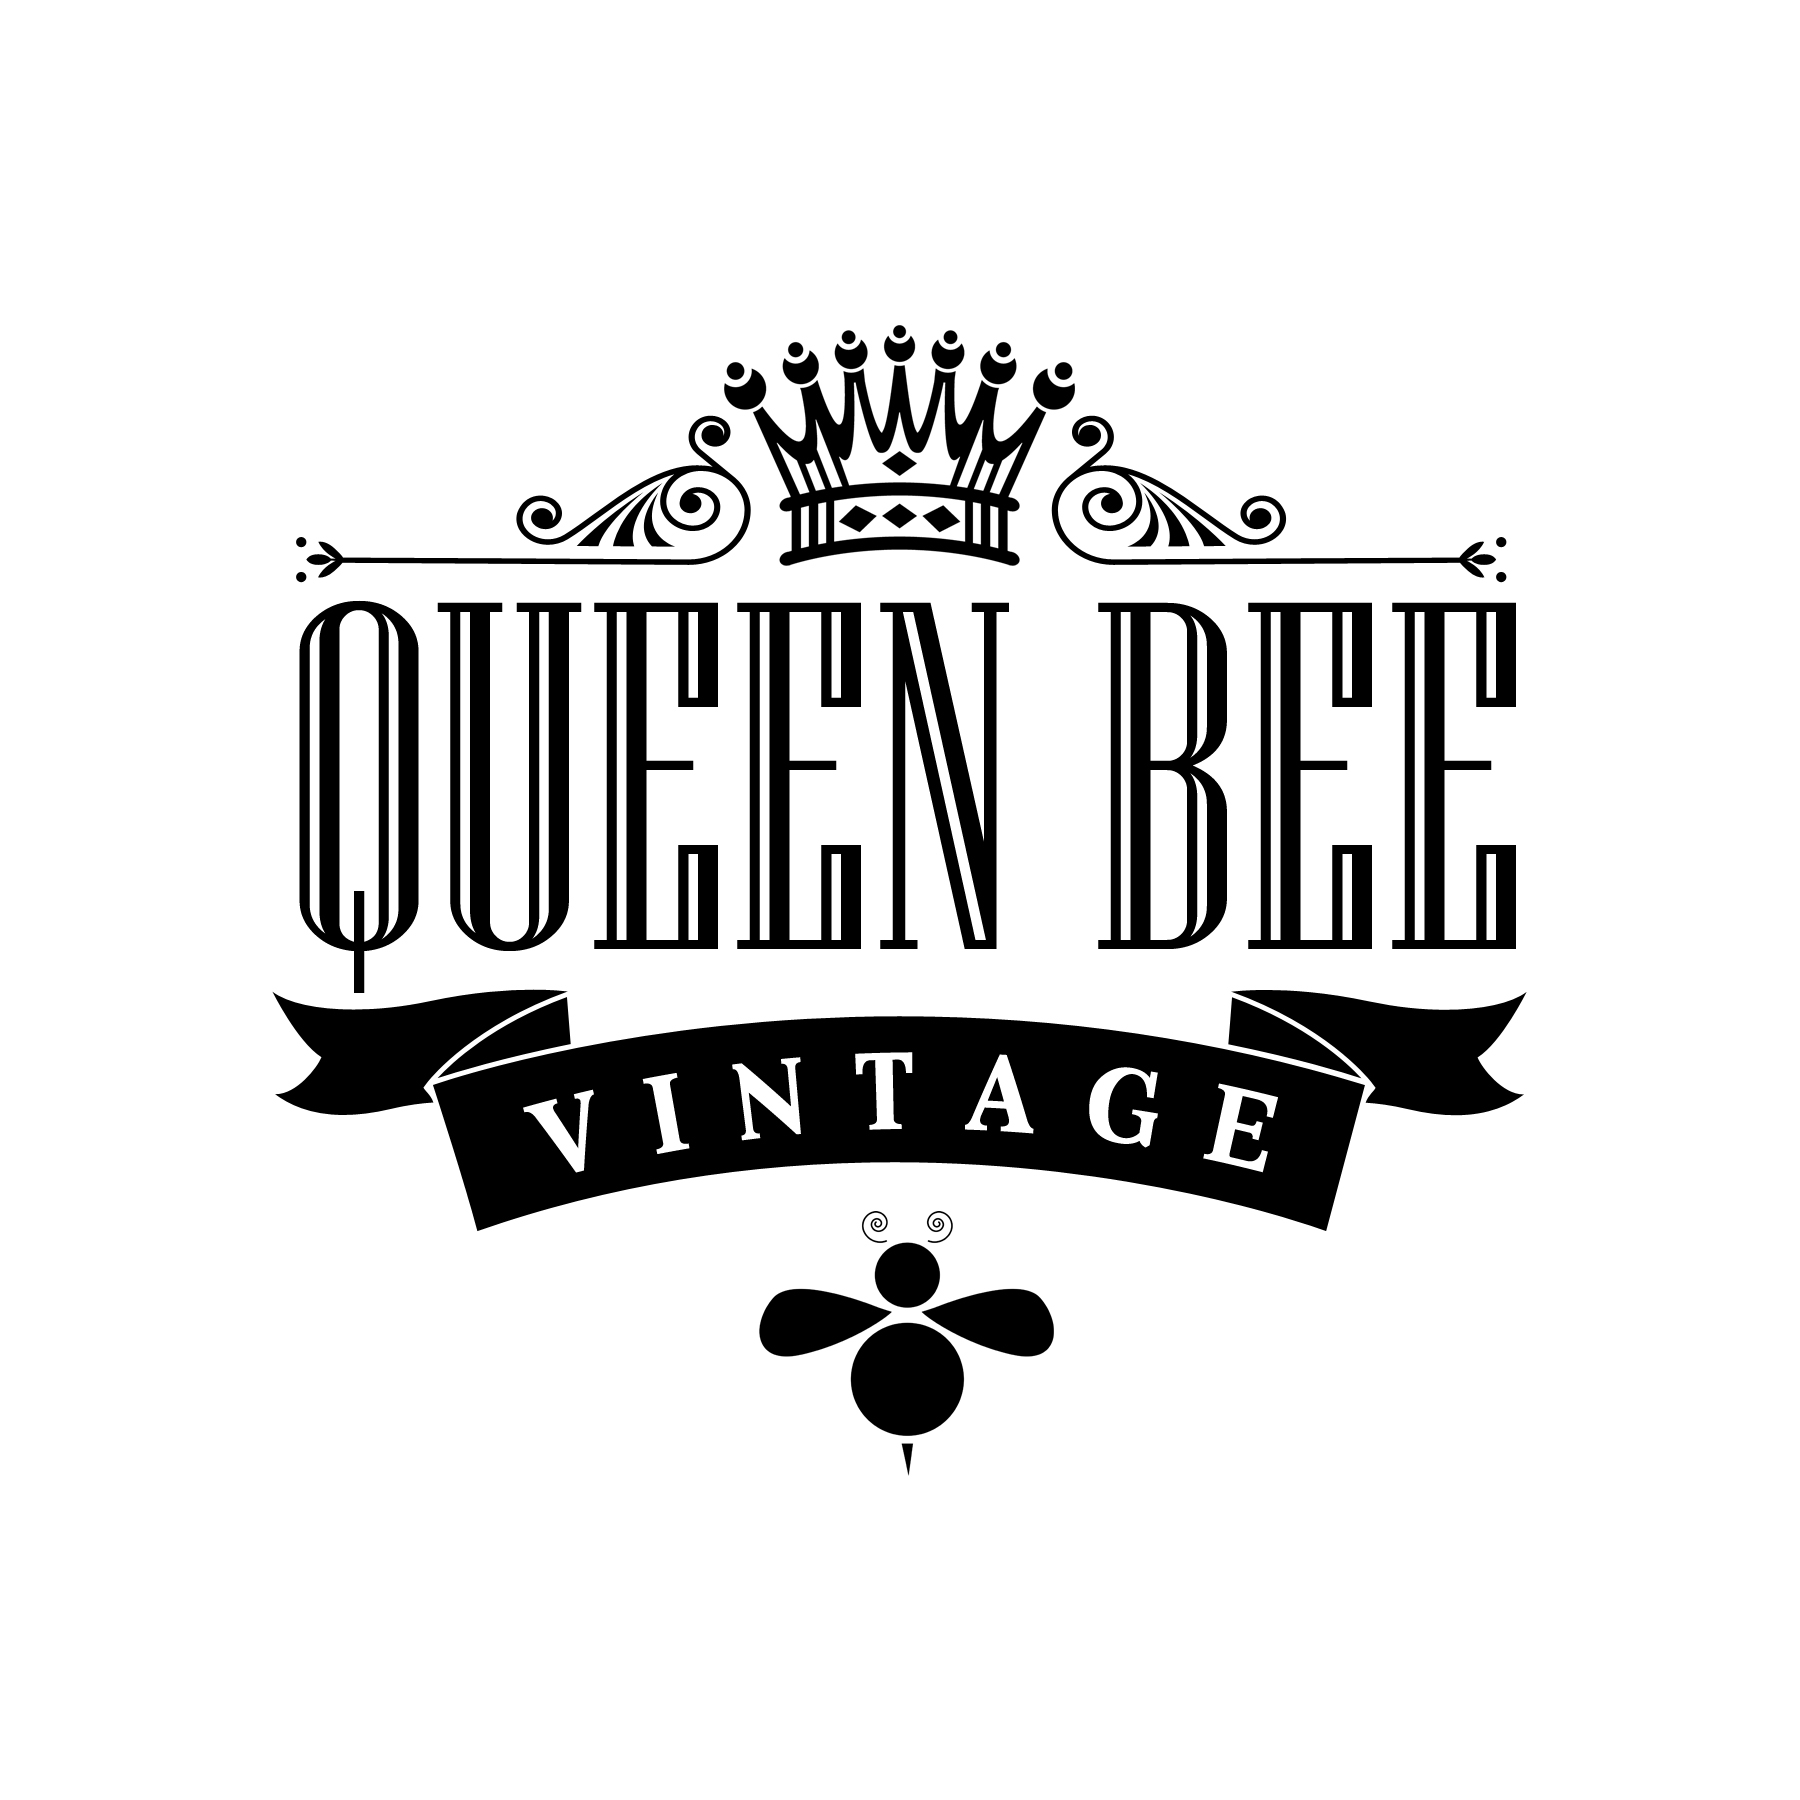 Queen Bee Vintage